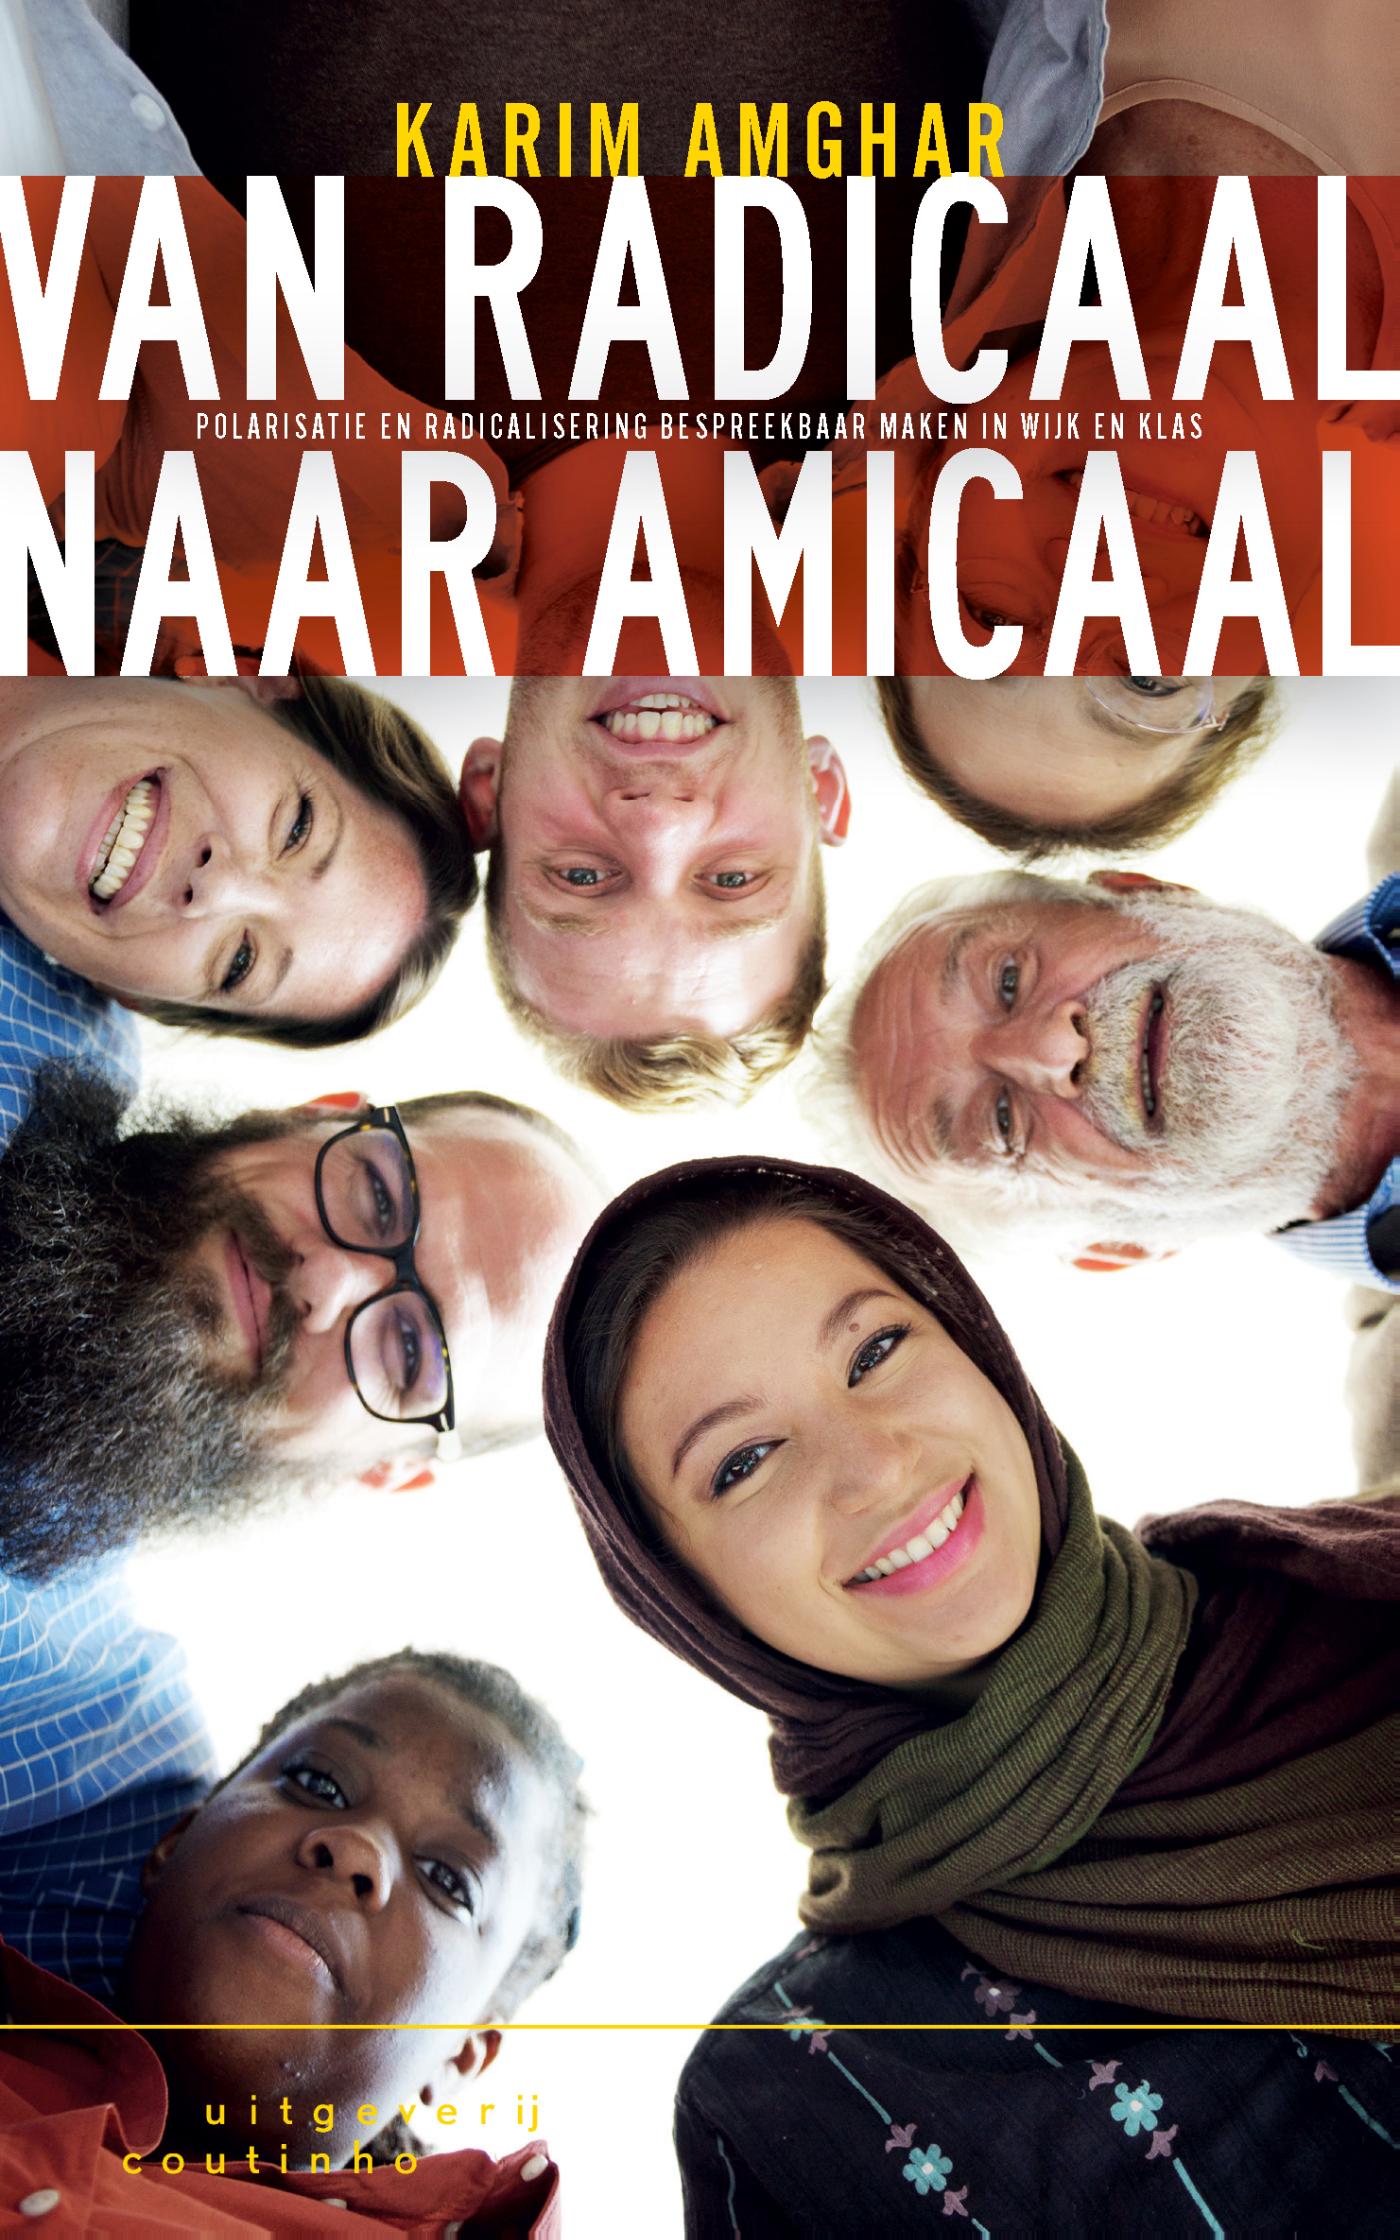 Van radicaal naar amicaal (Ebook)